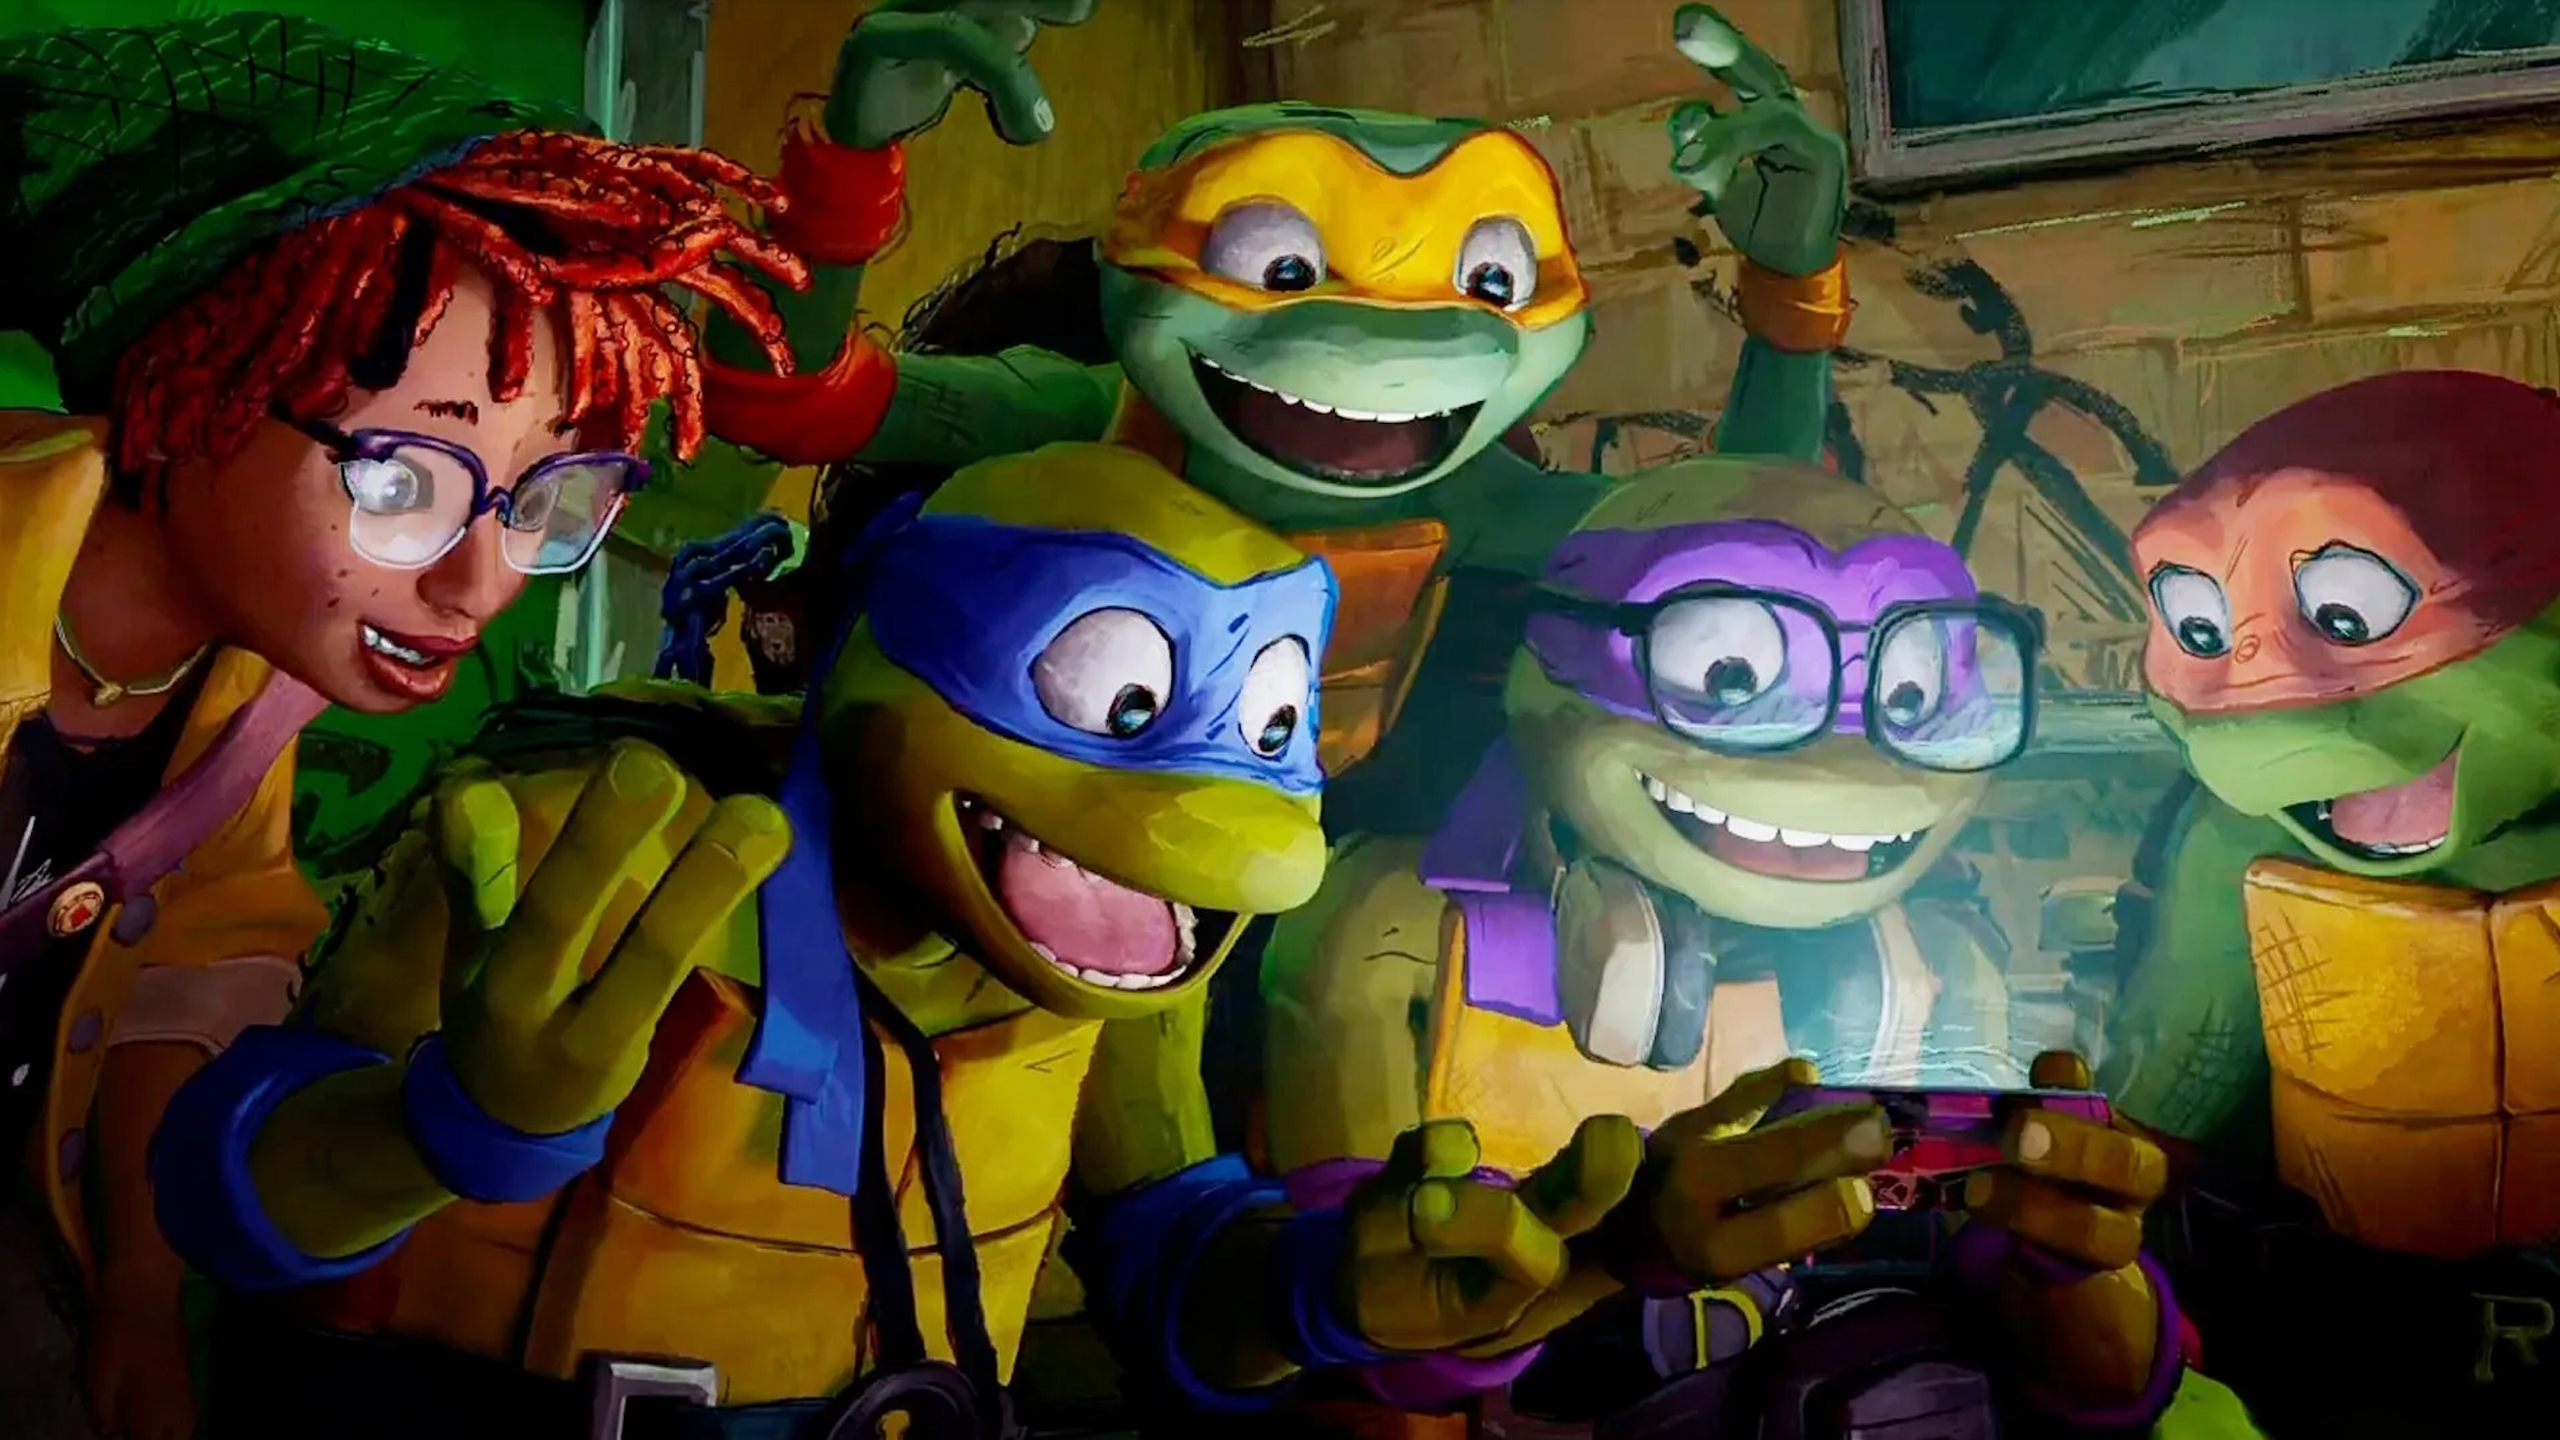 Las Tortugas Ninja vuelven a la gran pantalla con un renovado estilo de animación en 'Ninja Turtles: Caos mutante'